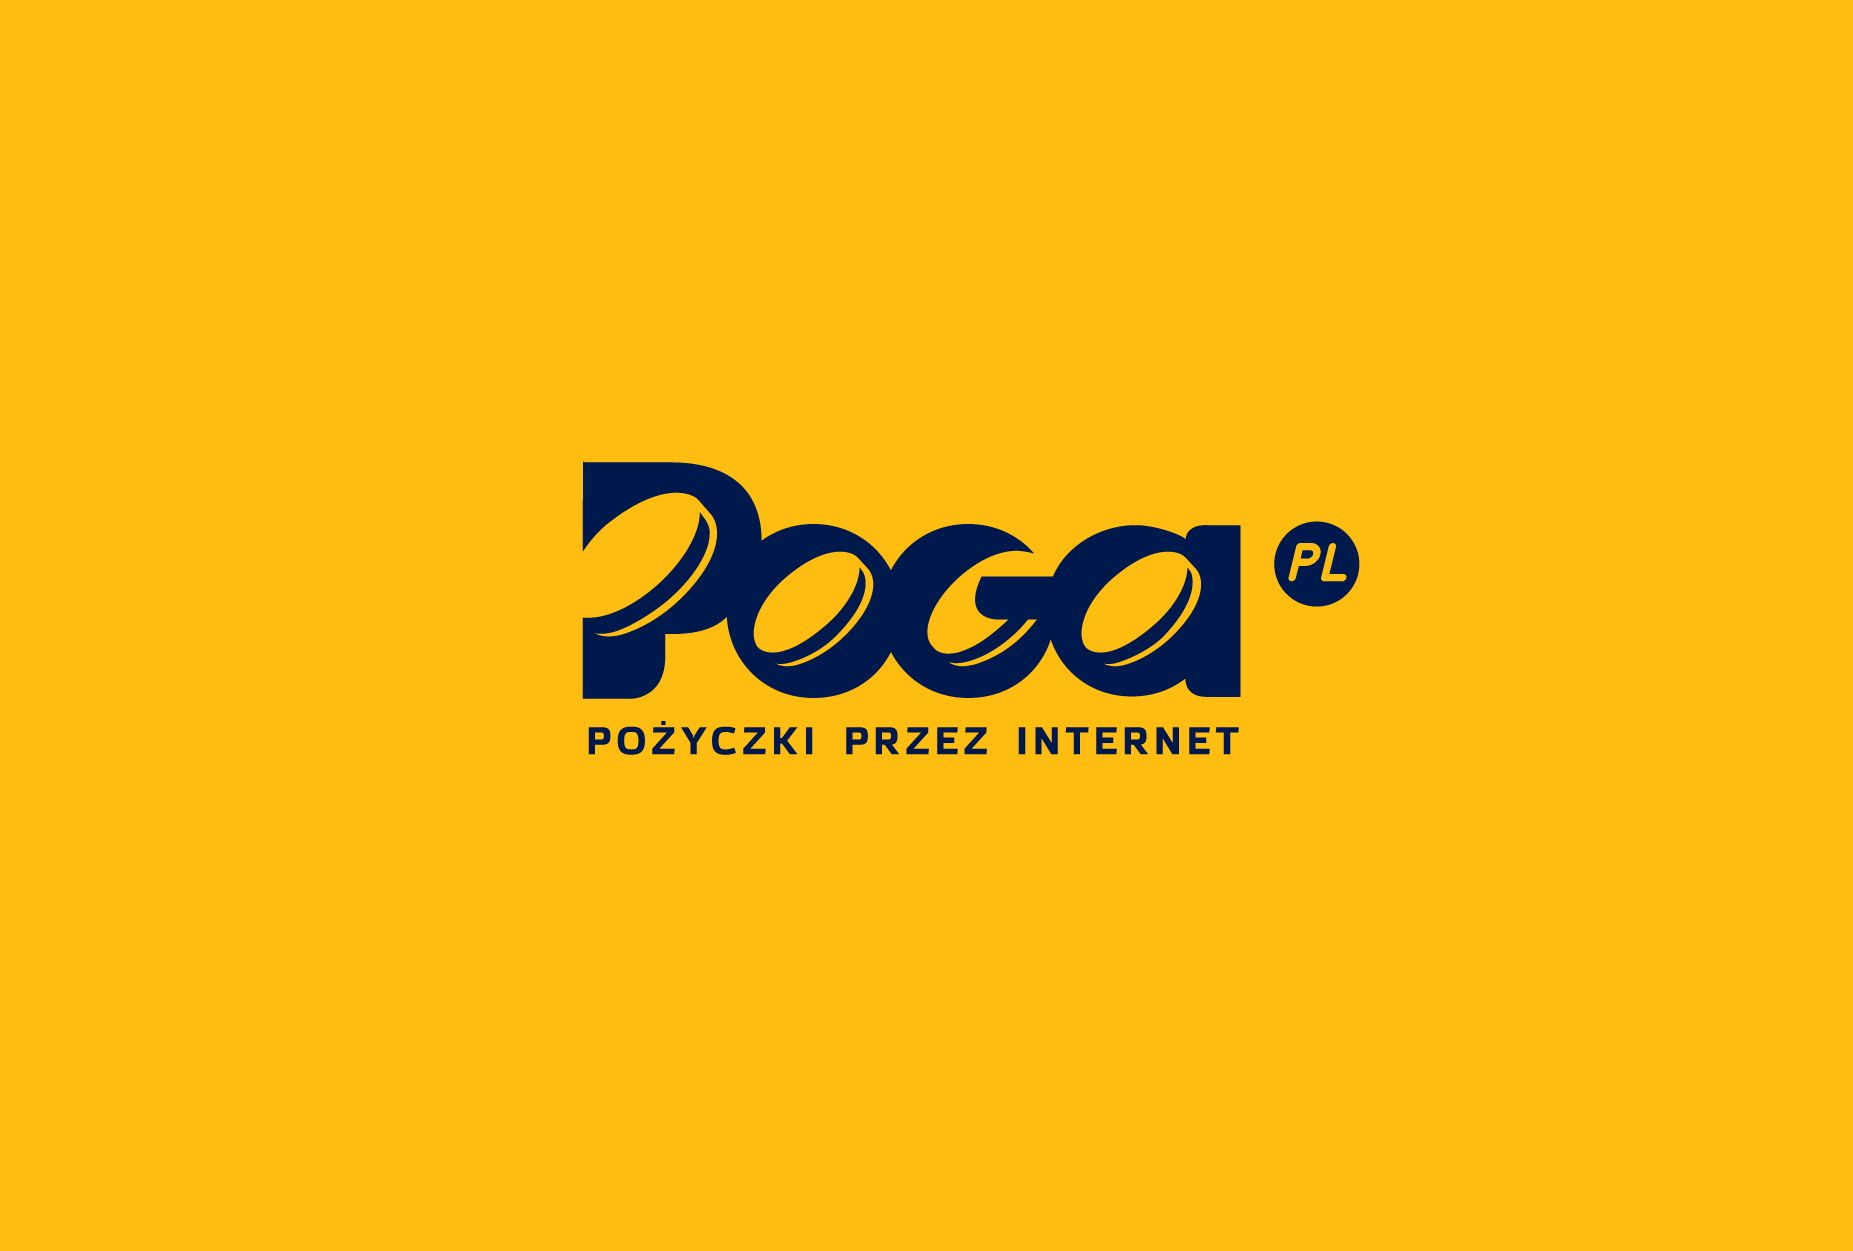 Логотип для POGA или POGA.pl - дизайнер shamaevserg